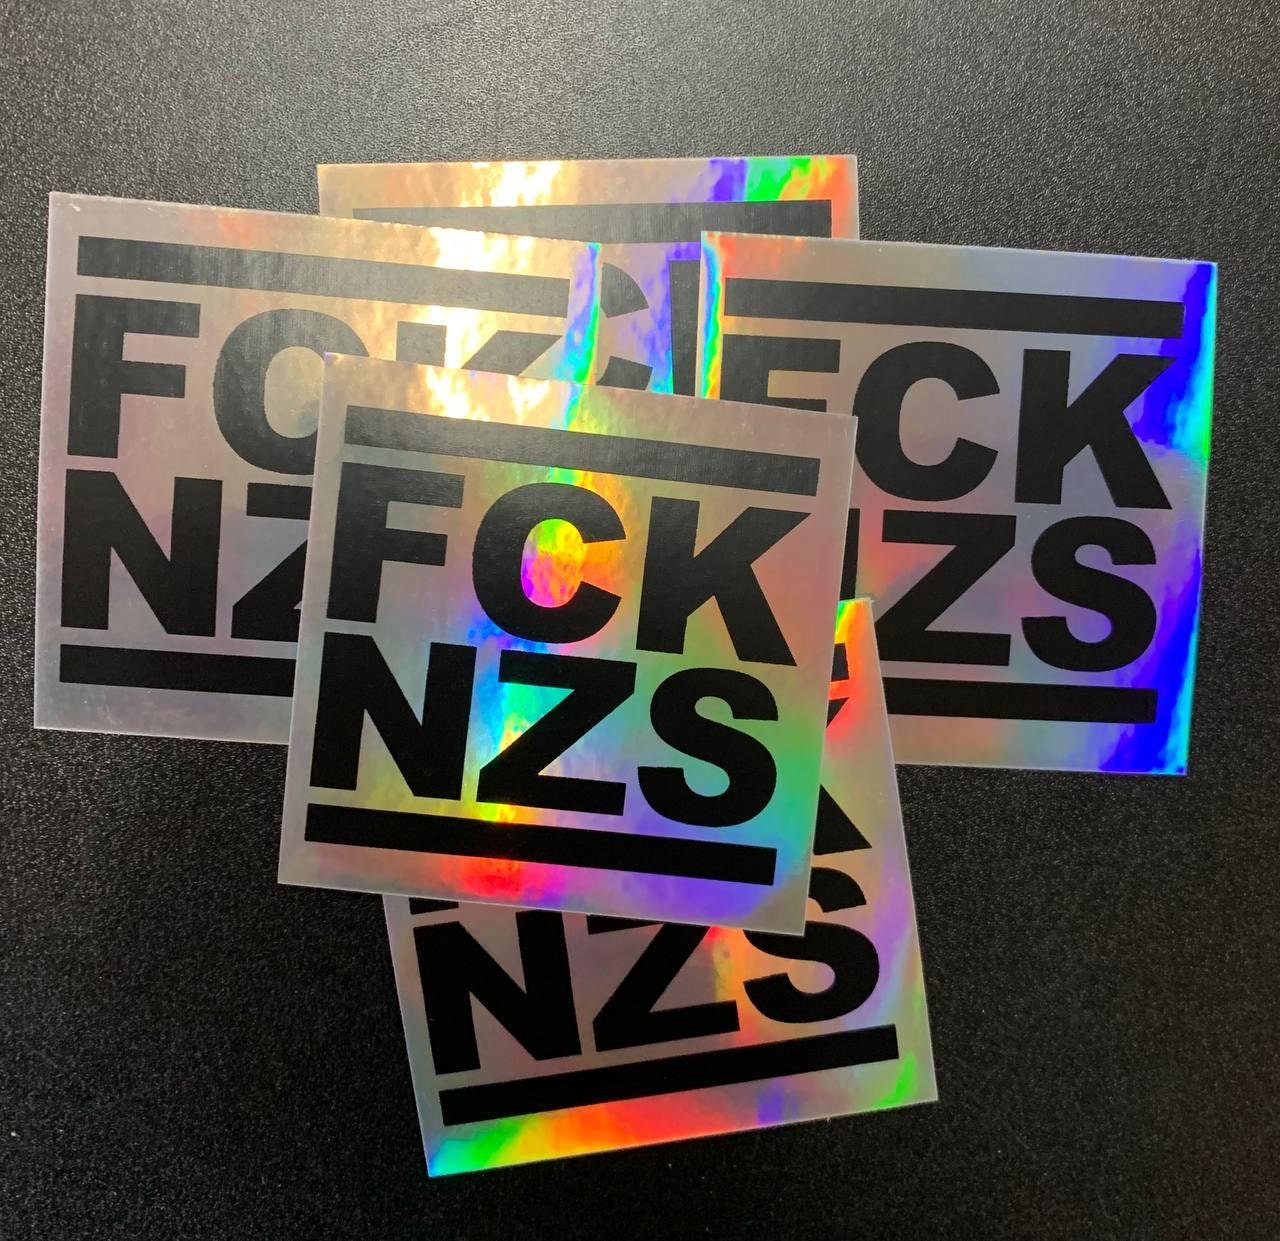 Hologramm-Sticker: FCK NZS 5 Sticker - .de